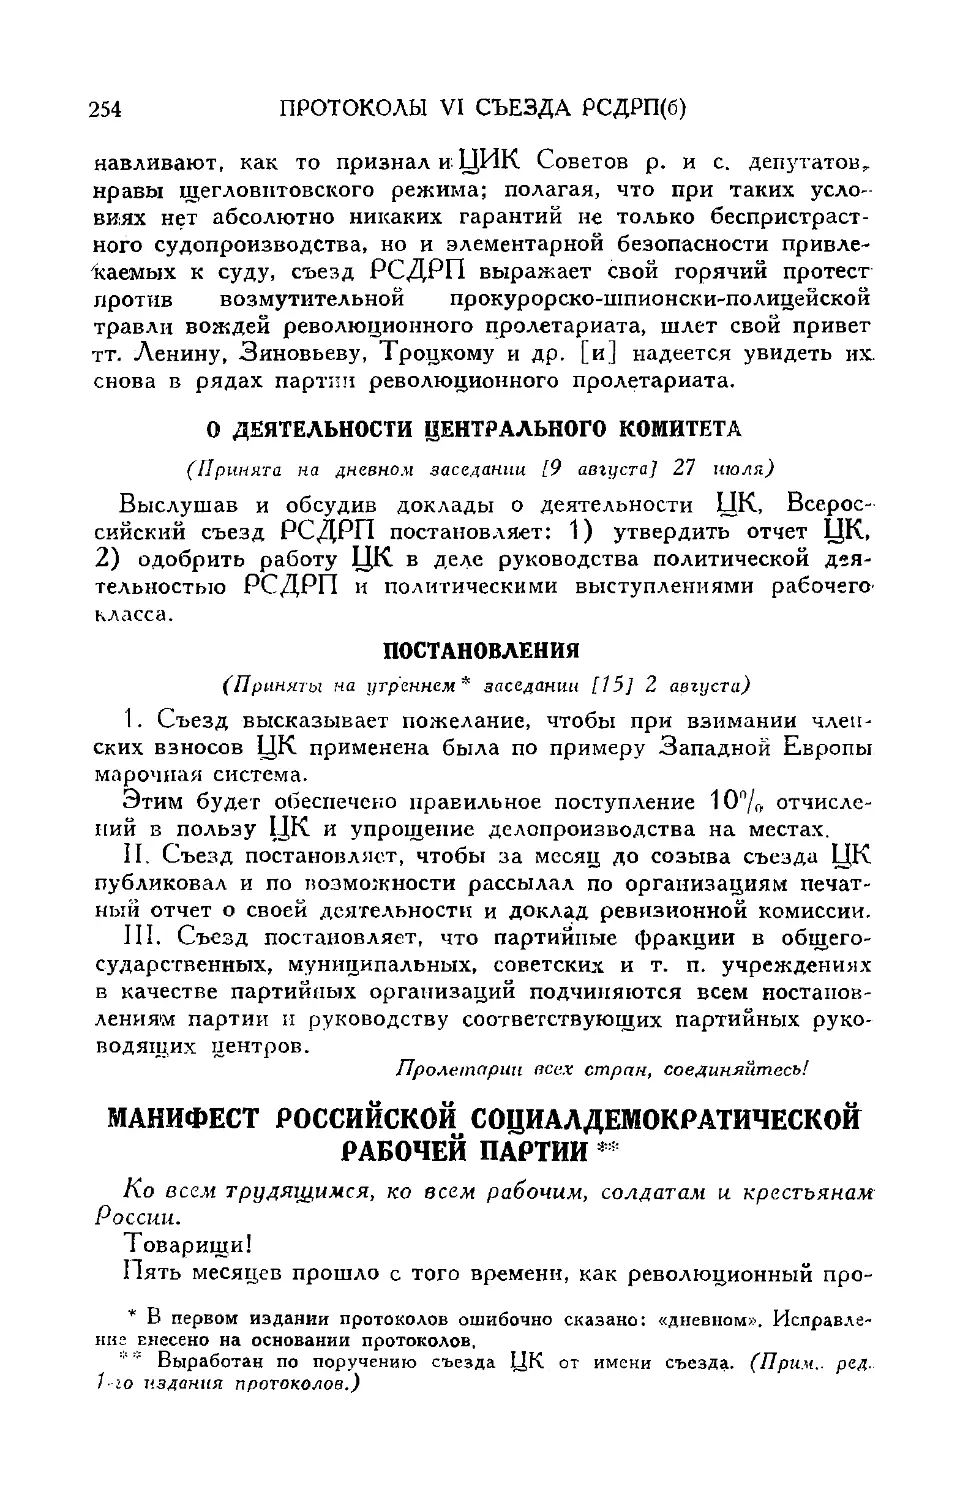 О деятельности Центрального комитета
Постановления
Манифест Российской социалдемократической рабочей партии